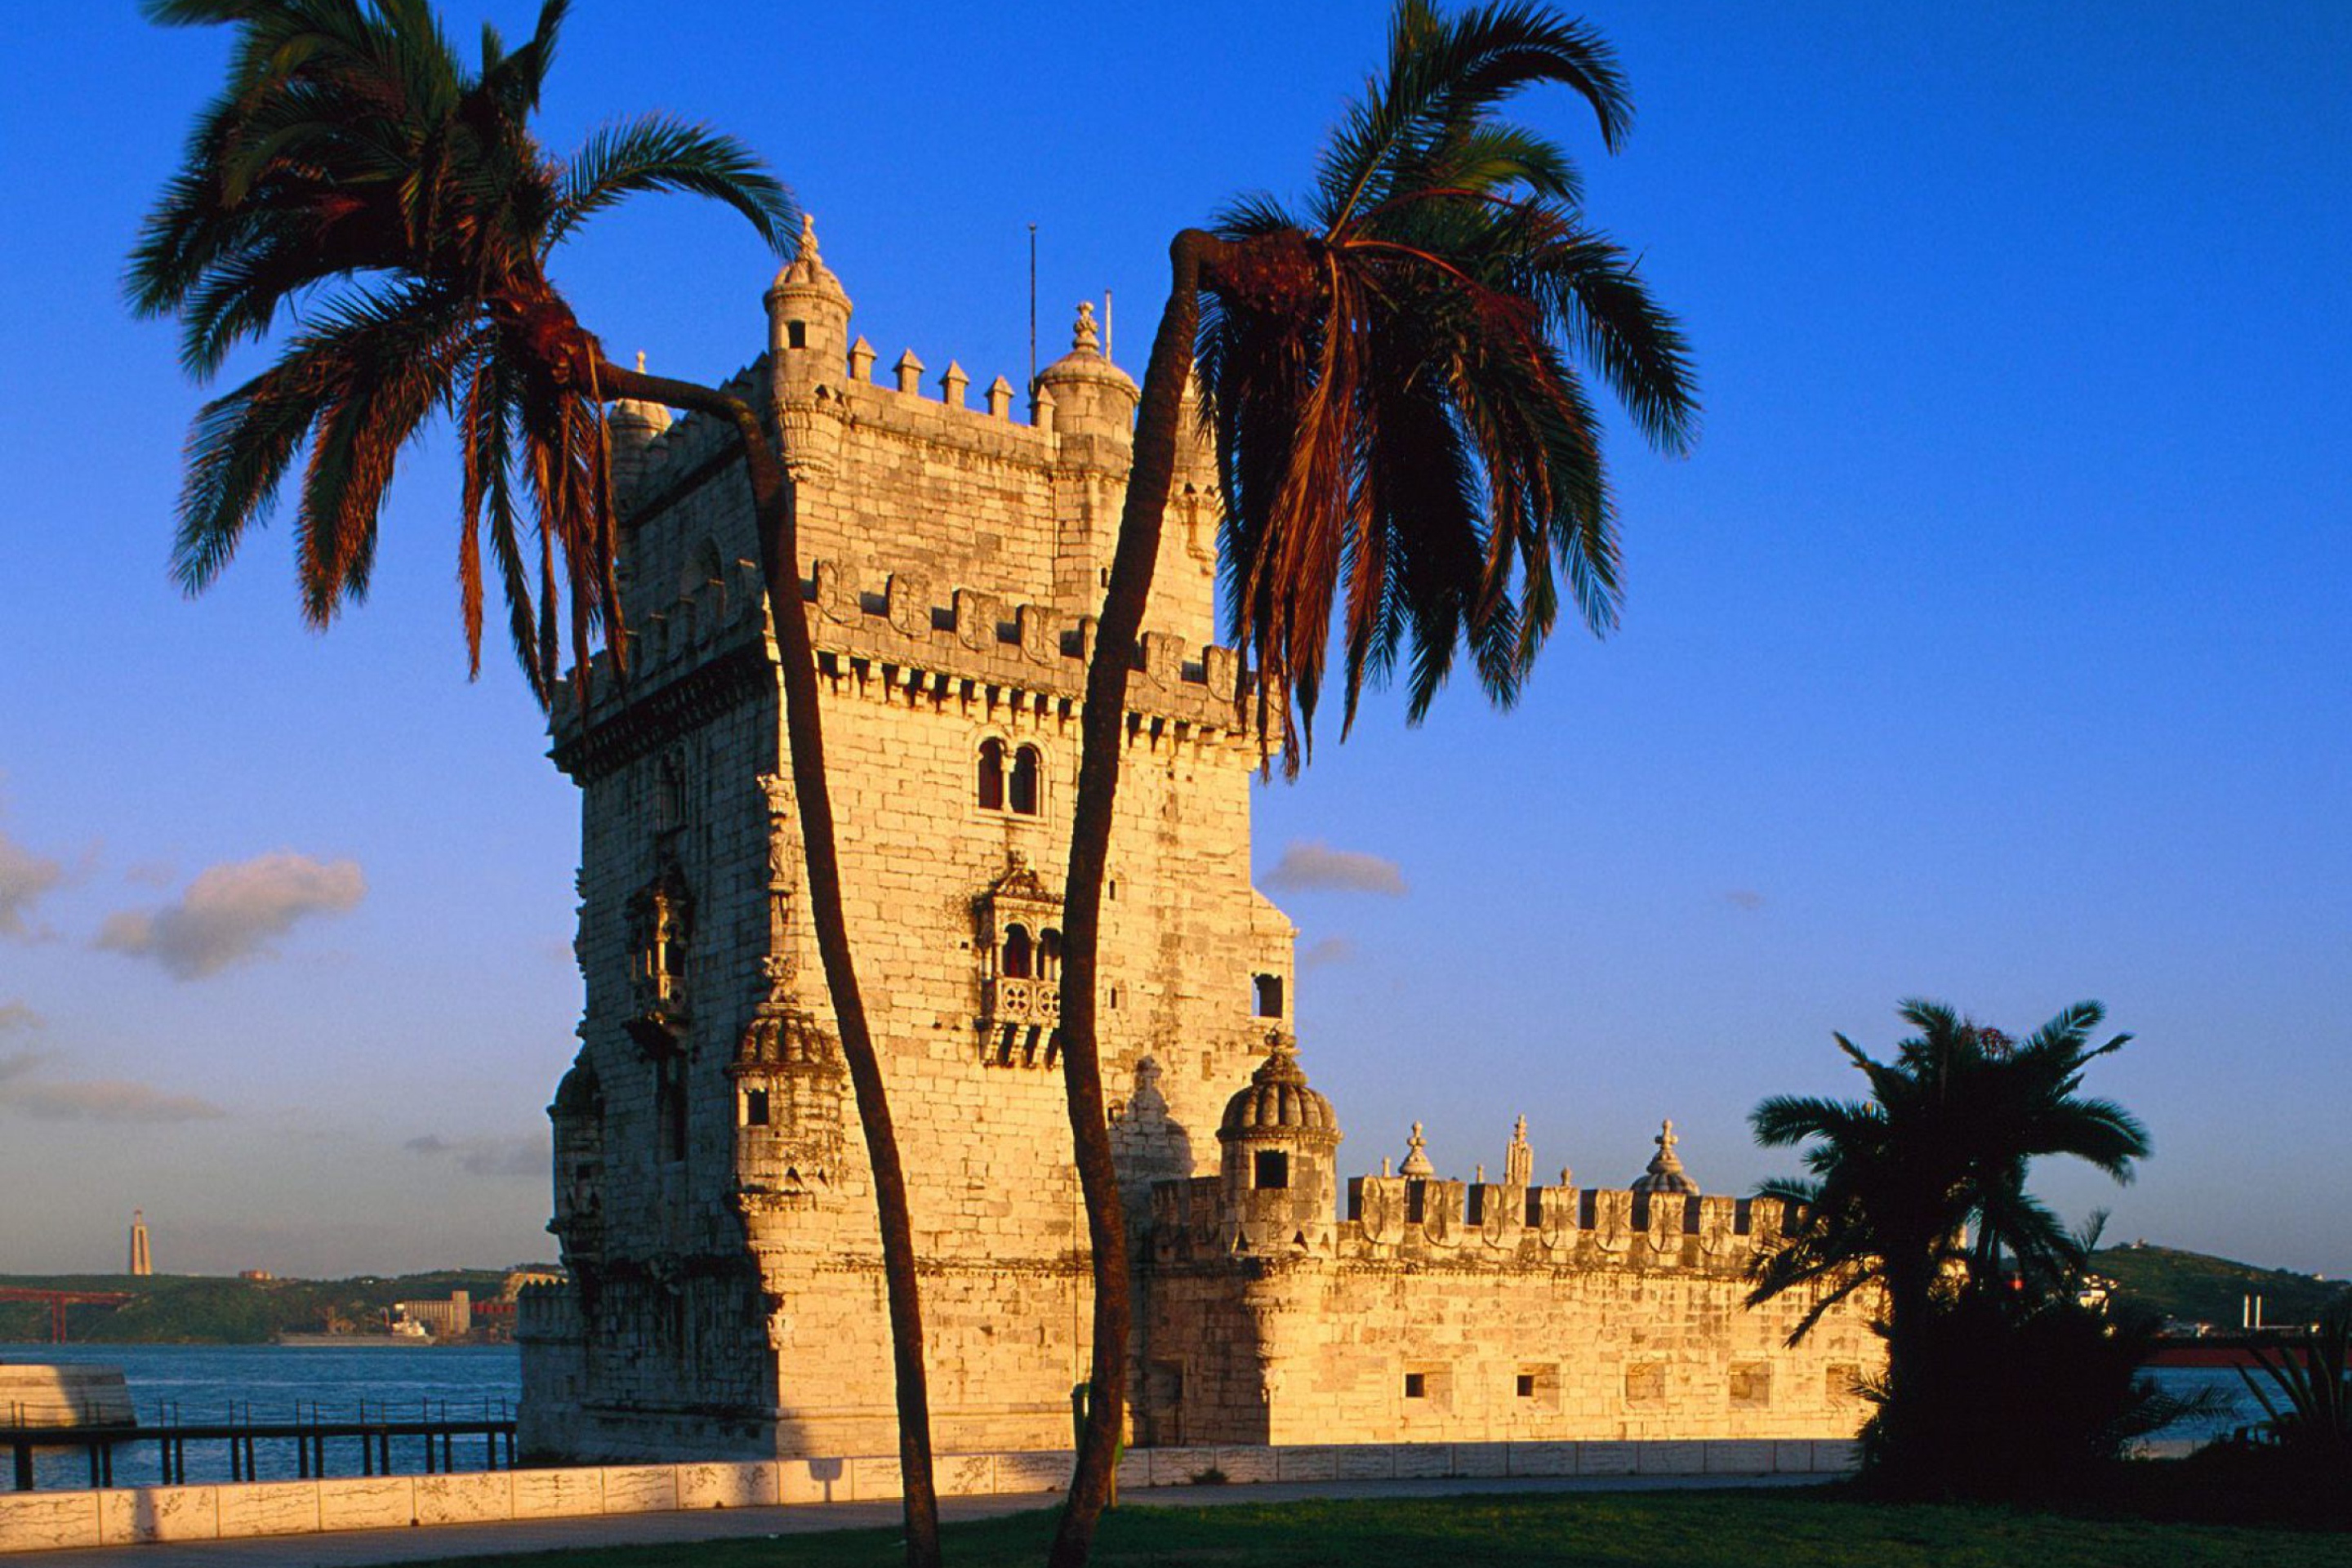 Das Belem Tower Portugal Wallpaper 2880x1920